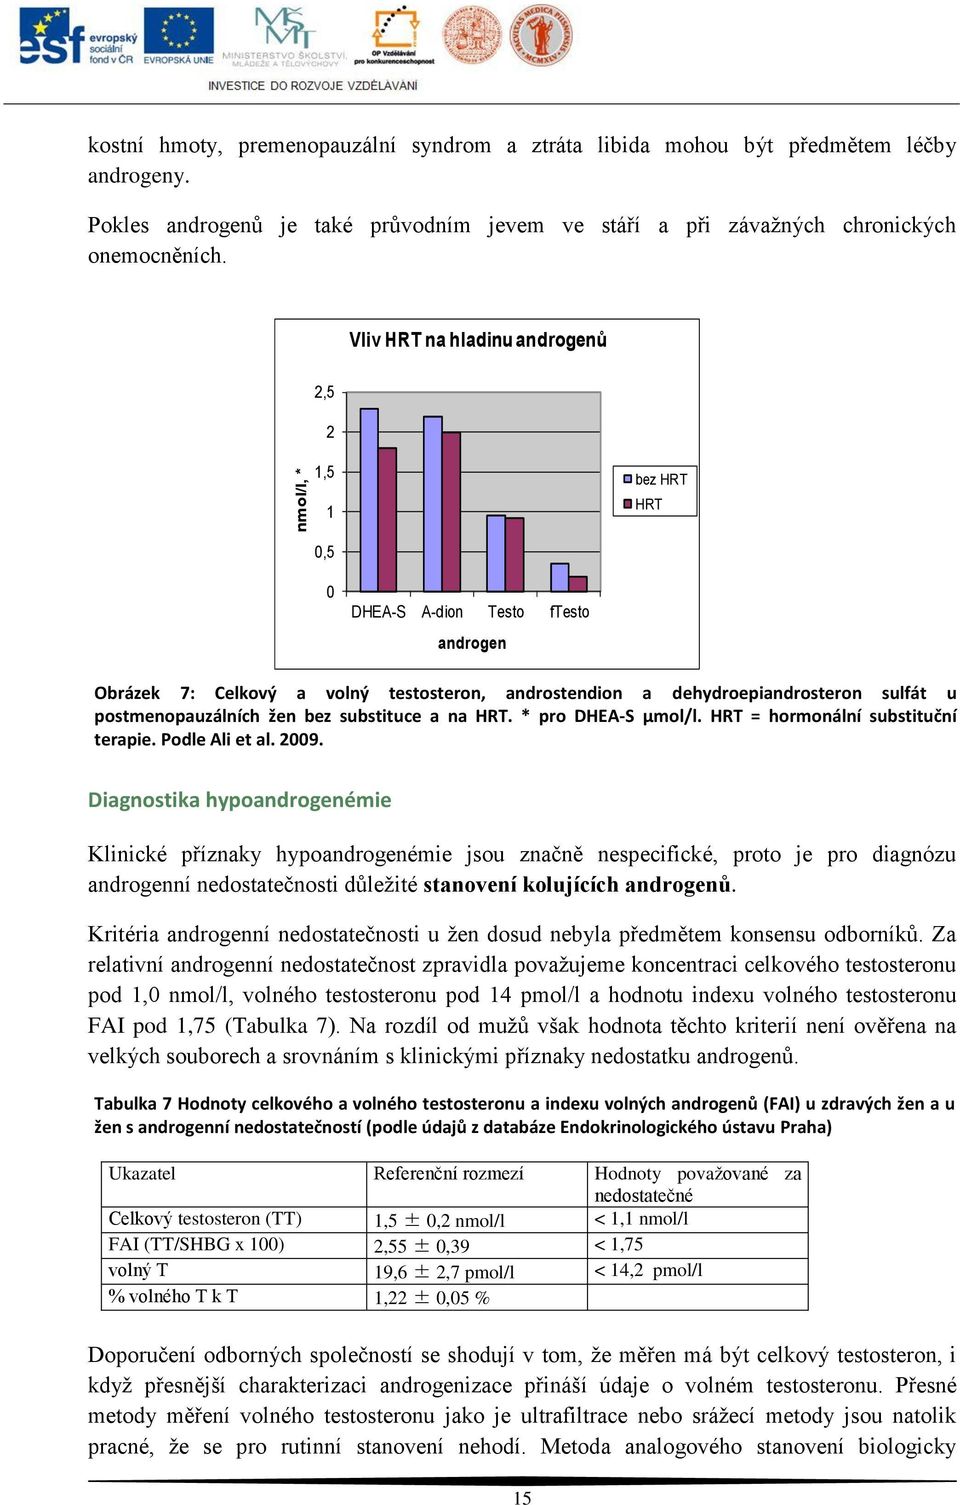 postmenopauzálních žen bez substituce a na HRT. * pro DHEA-S µmol/l. HRT = hormonální substituční terapie. Podle Ali et al. 2009.